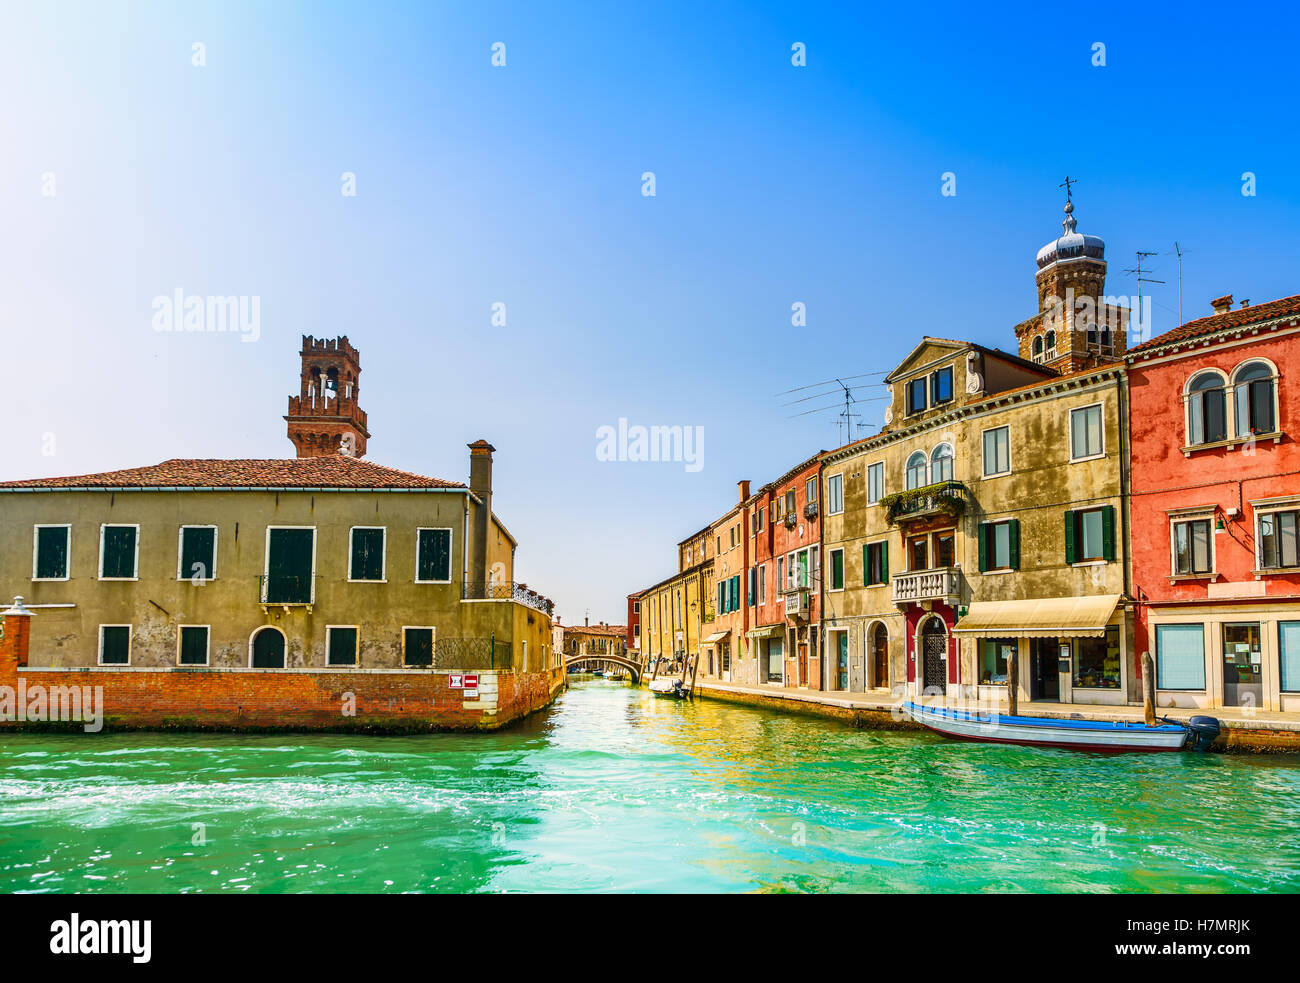 Vetro di Murano rendendo isola, acqua canal, bridge, barca e edifici tradizionali. Venezia o Venezia, Italia, Europa. Foto Stock